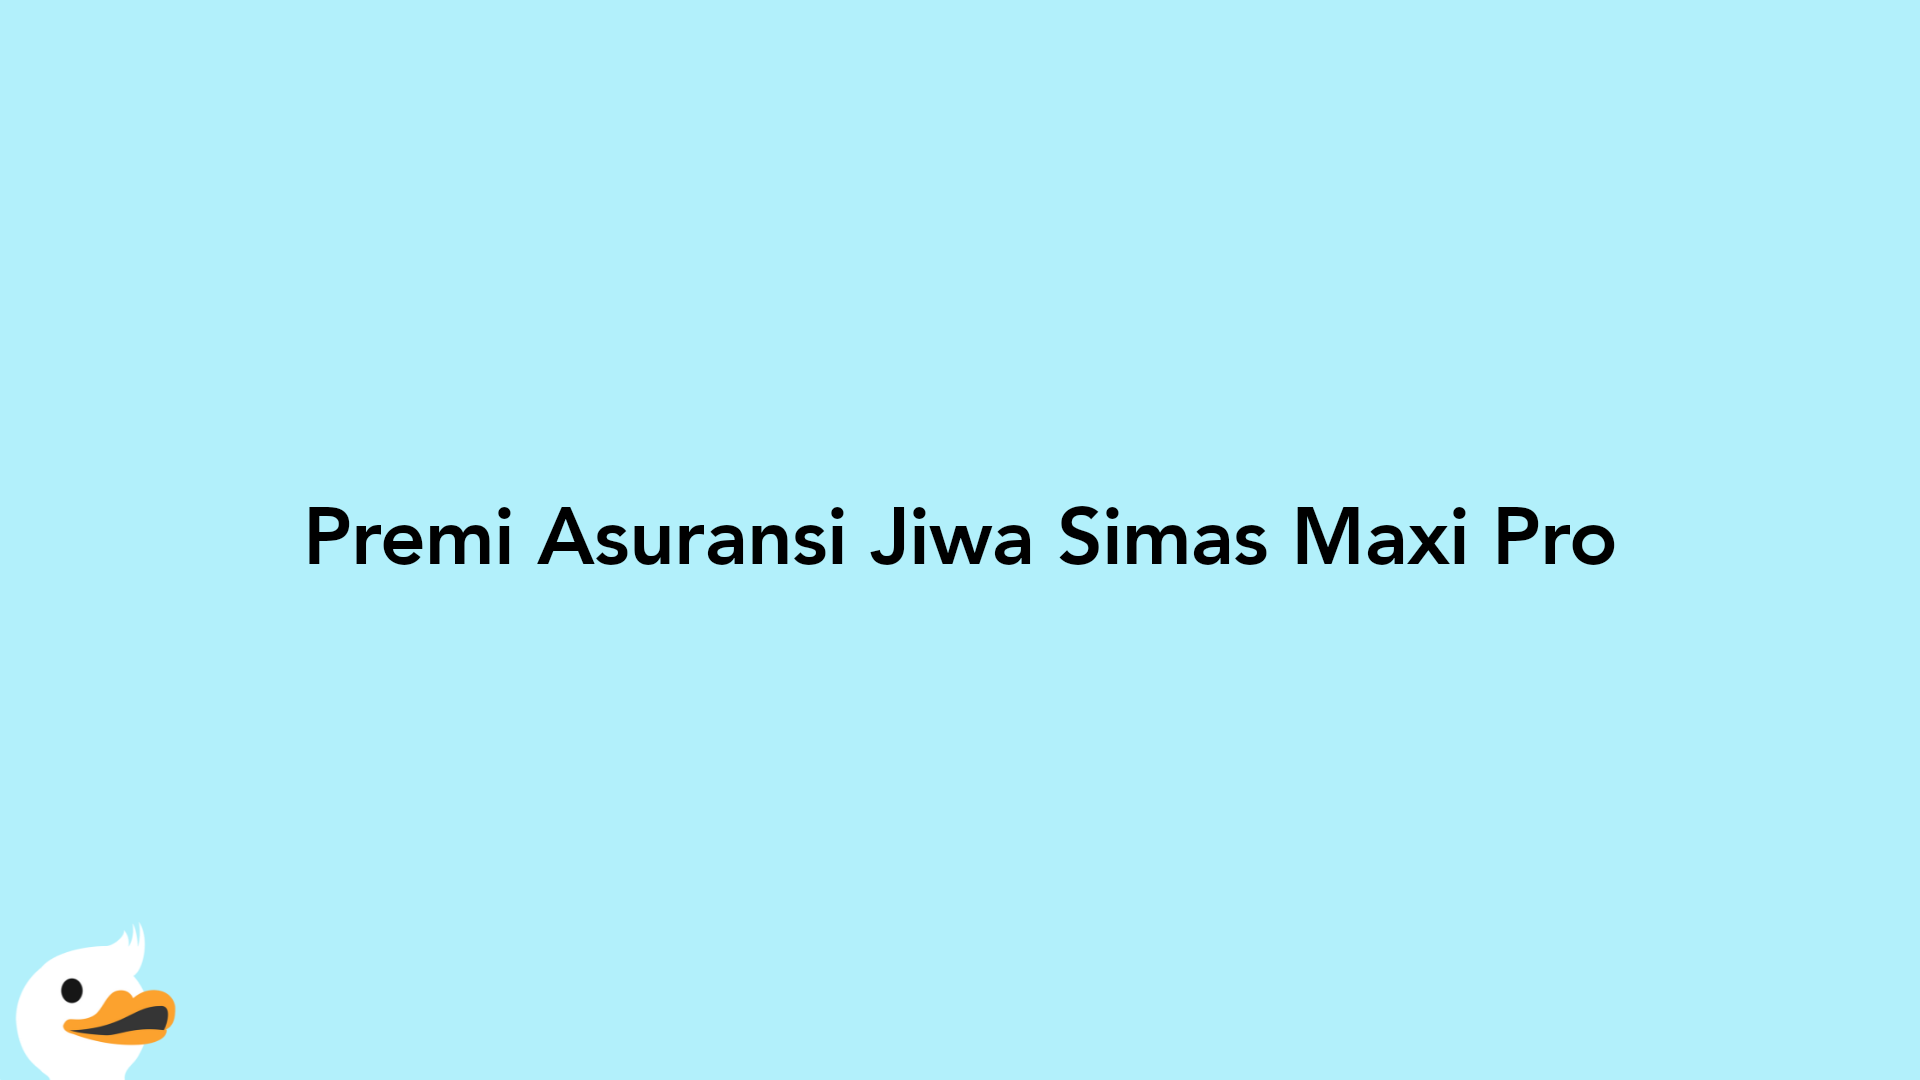 Premi Asuransi Jiwa Simas Maxi Pro